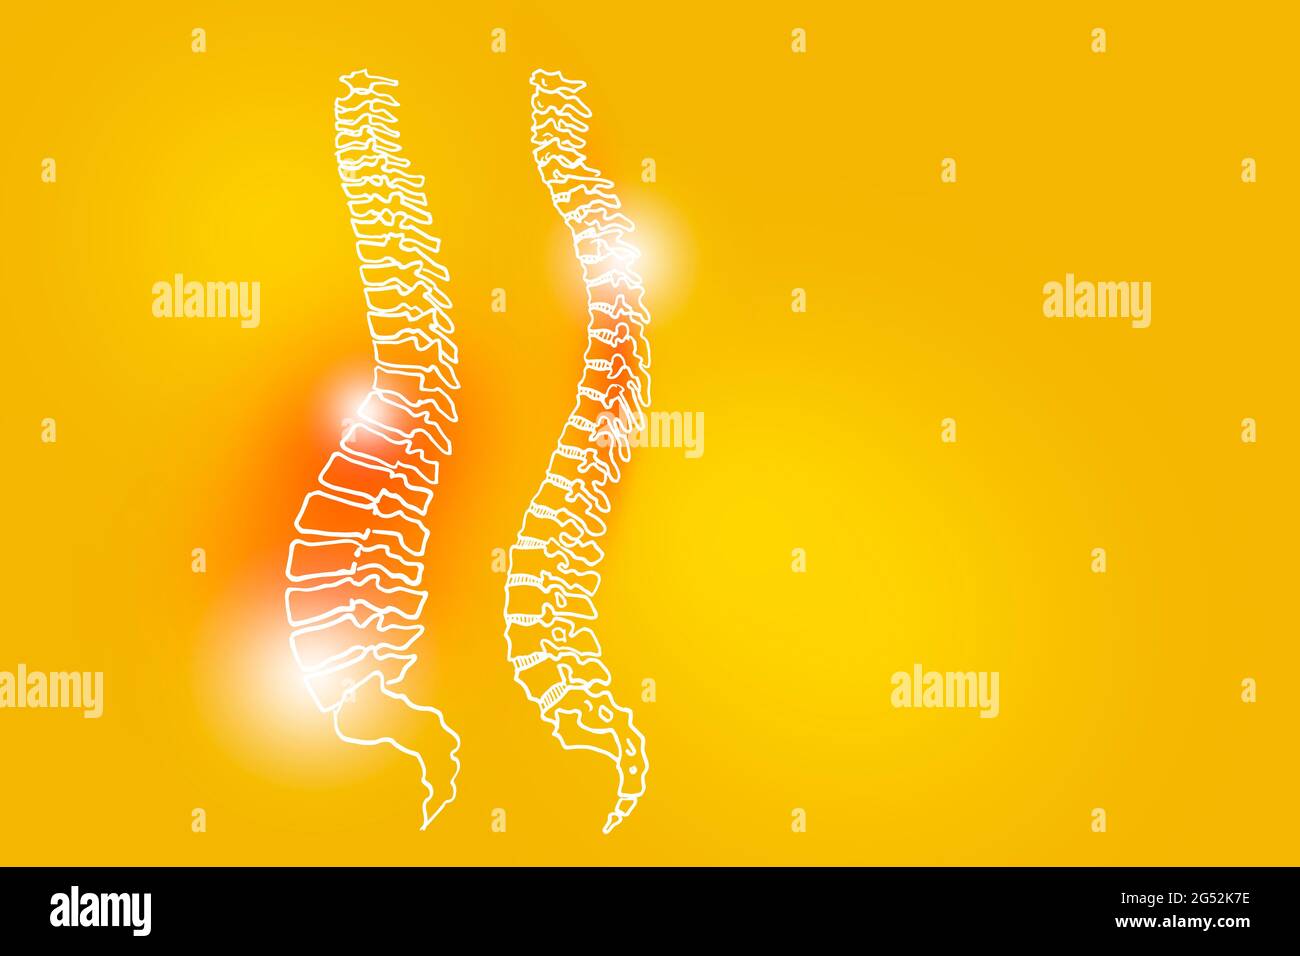 Handgezeichnete Darstellung der menschlichen Wirbelsäule auf gelbem Hintergrund. Medizin, Wissenschaftsset mit menschlichen Hauptorganen mit leerem Kopierraum für Text oder Infografik. Stockfoto